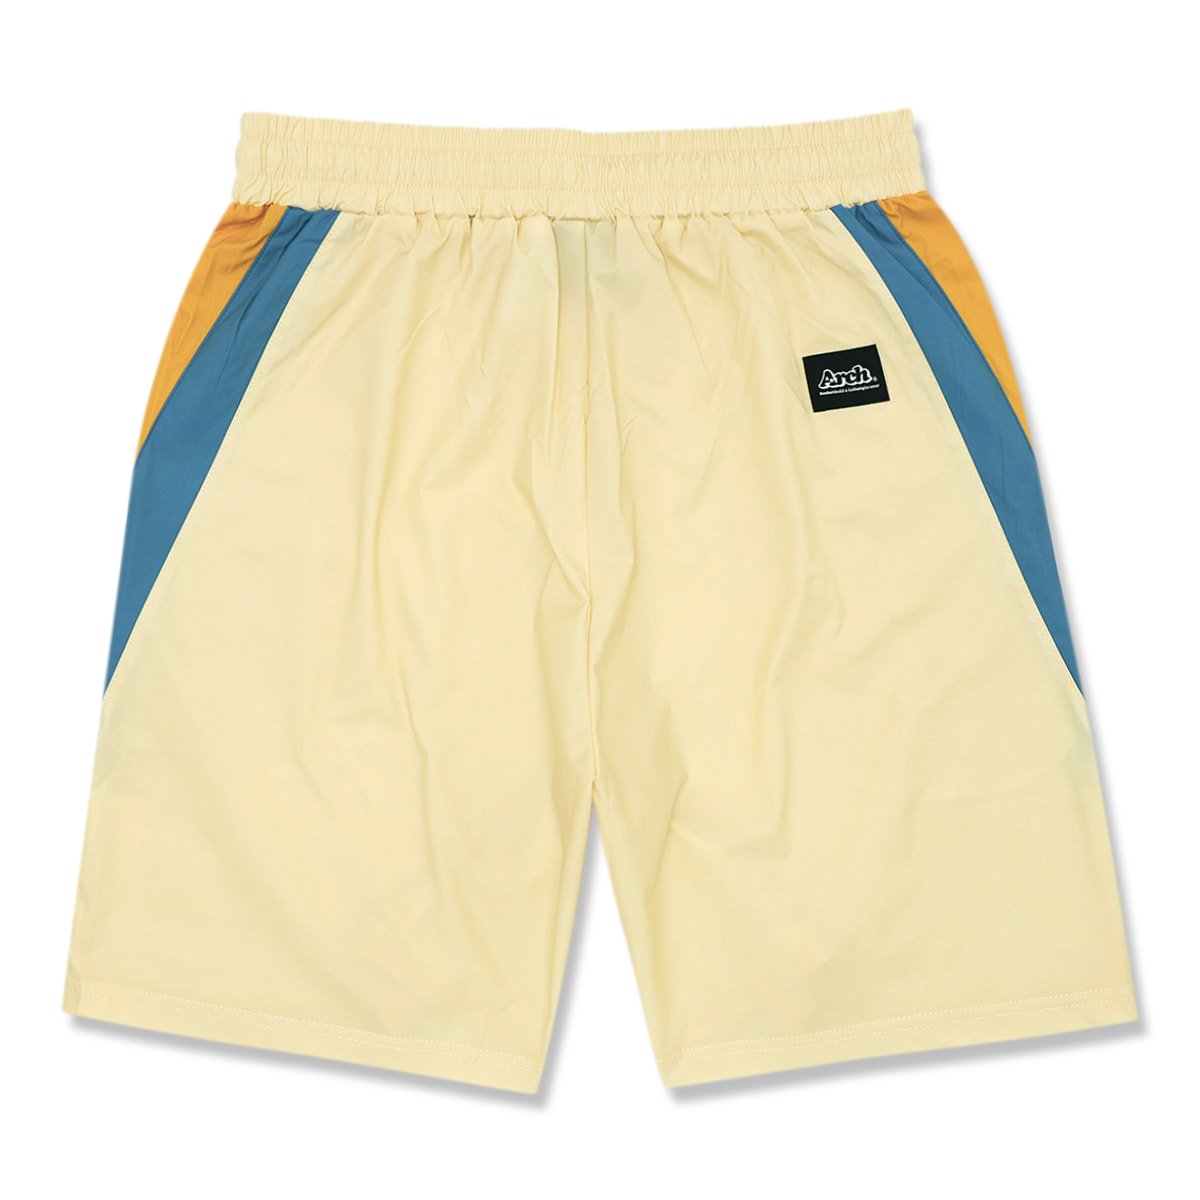 side colors shorts【vanilla】 - Arch ☆ アーチ [バスケットボール 